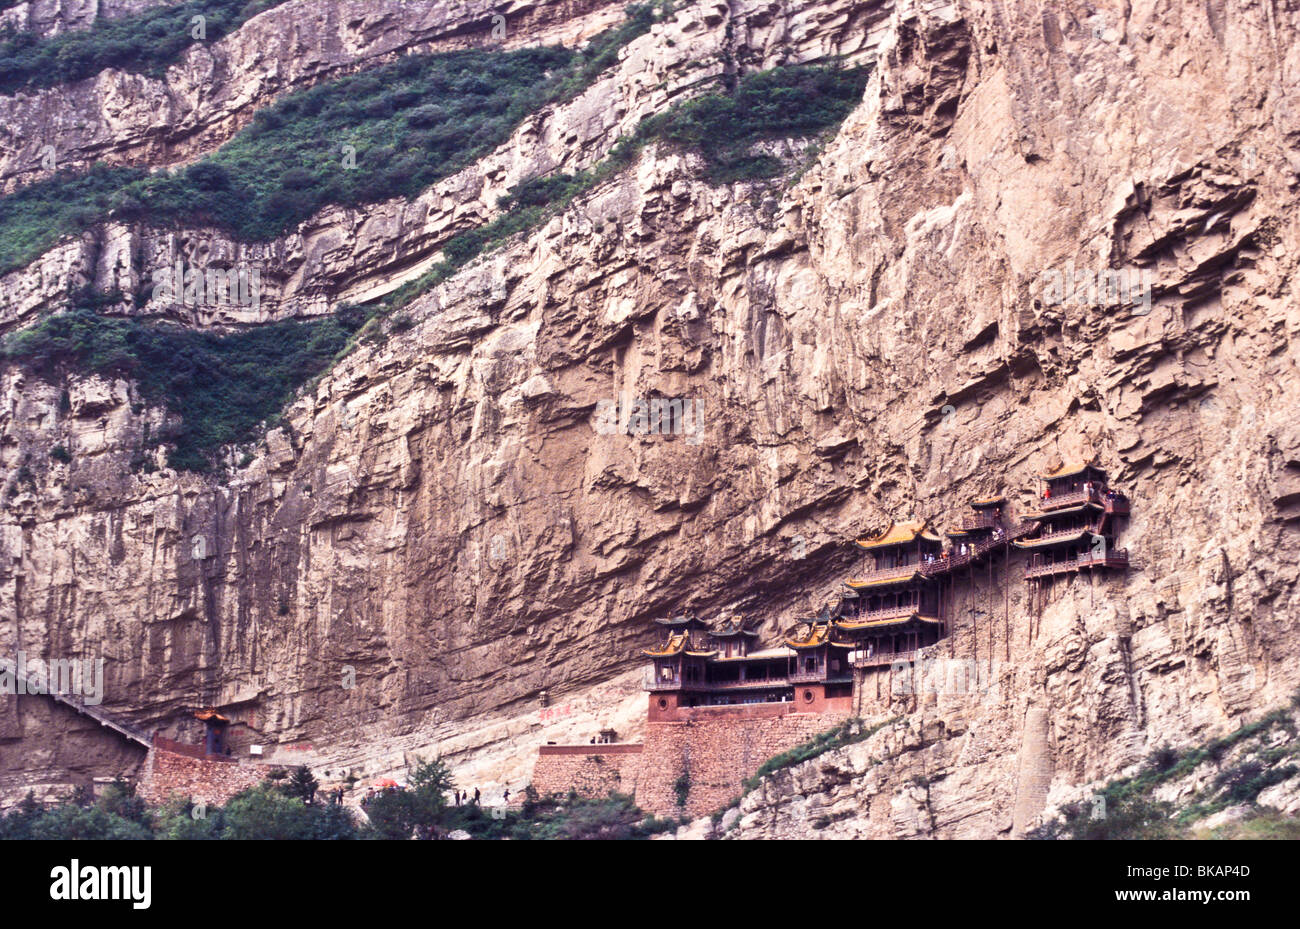 Le suspendu dans l' air, monastère Xuankong Si correctement connu comme précaire, se bloque au large de la chaîne de montagnes Heng Shan. Banque D'Images